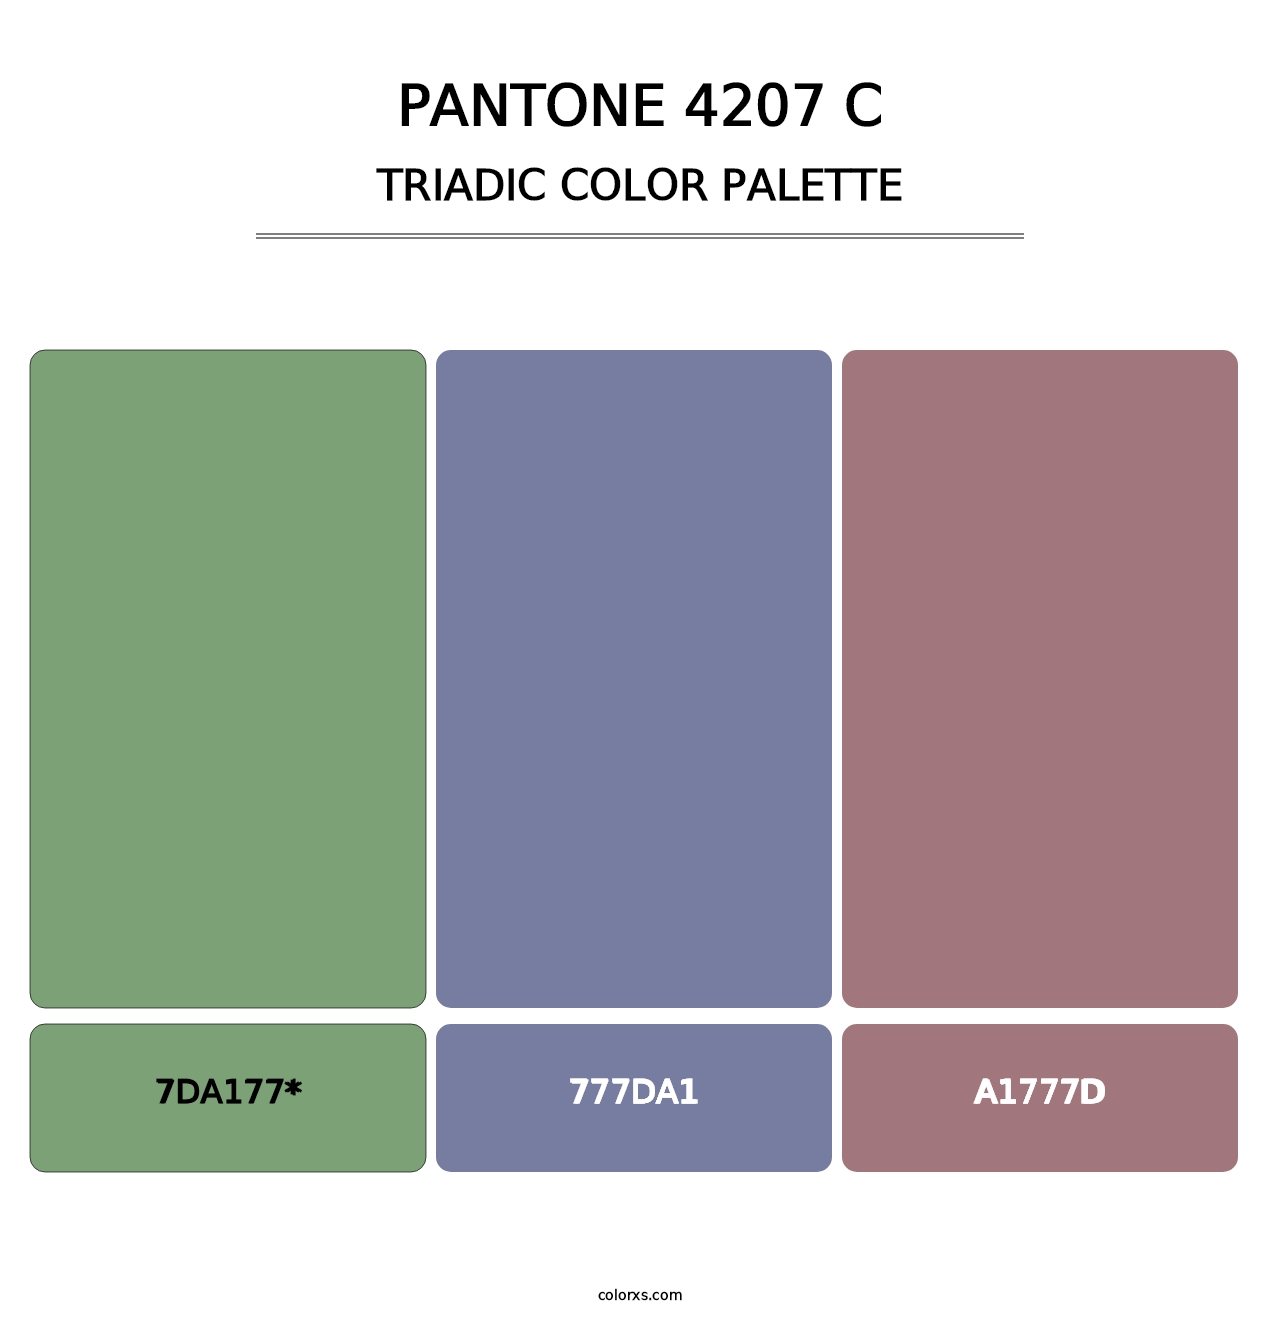 PANTONE 4207 C - Triadic Color Palette